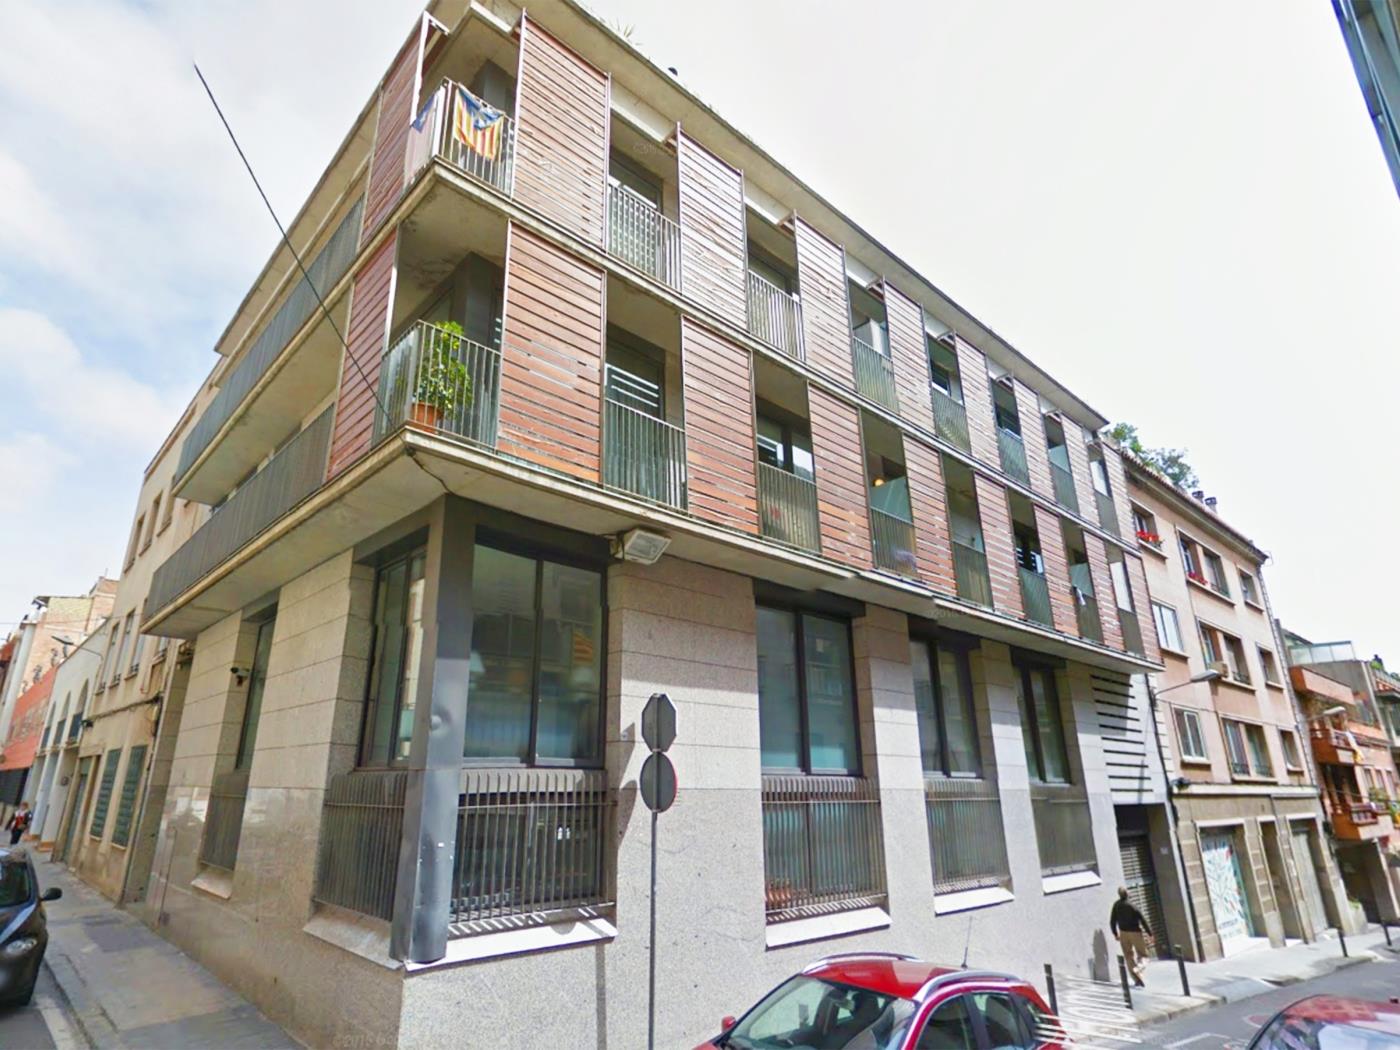 Wohnung mit privater Terrasse in der Nähe des Park Güell für 6 Personen - My Space Barcelona Appartementen